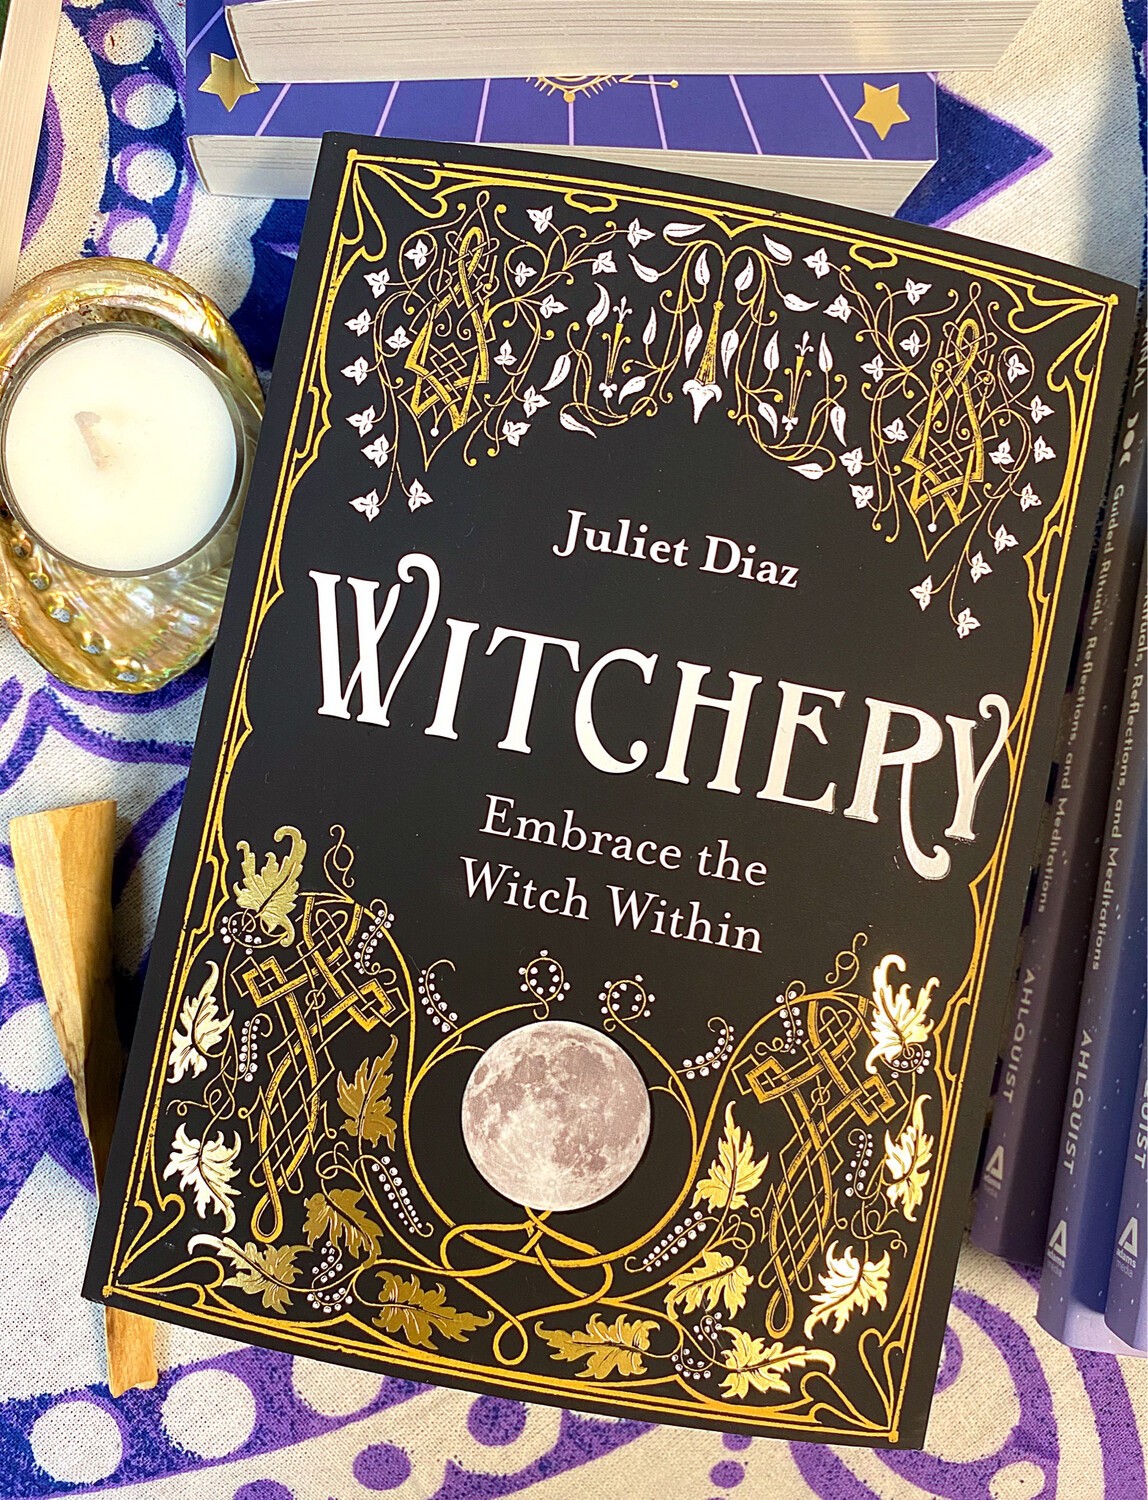 Witchery, by Juliet Diaz